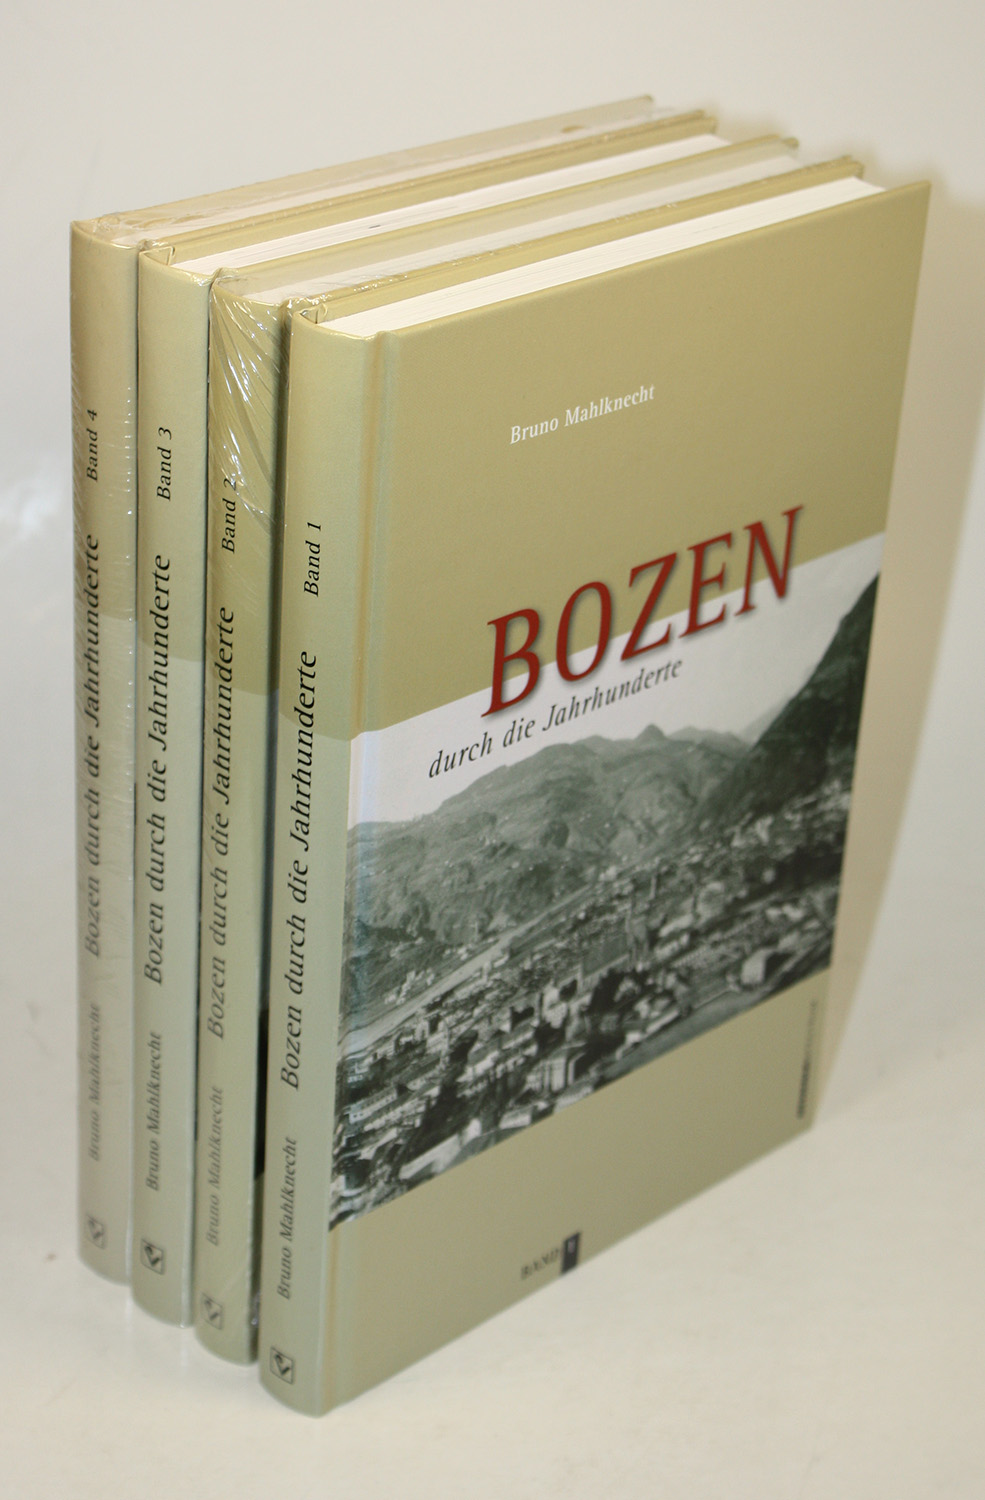 Bozen durch die Jahrhunderte. Bilder und Texte zur Geschichte und Kulturgeschichte von Bozen. 1 - 4. - Mahlknecht, Bruno